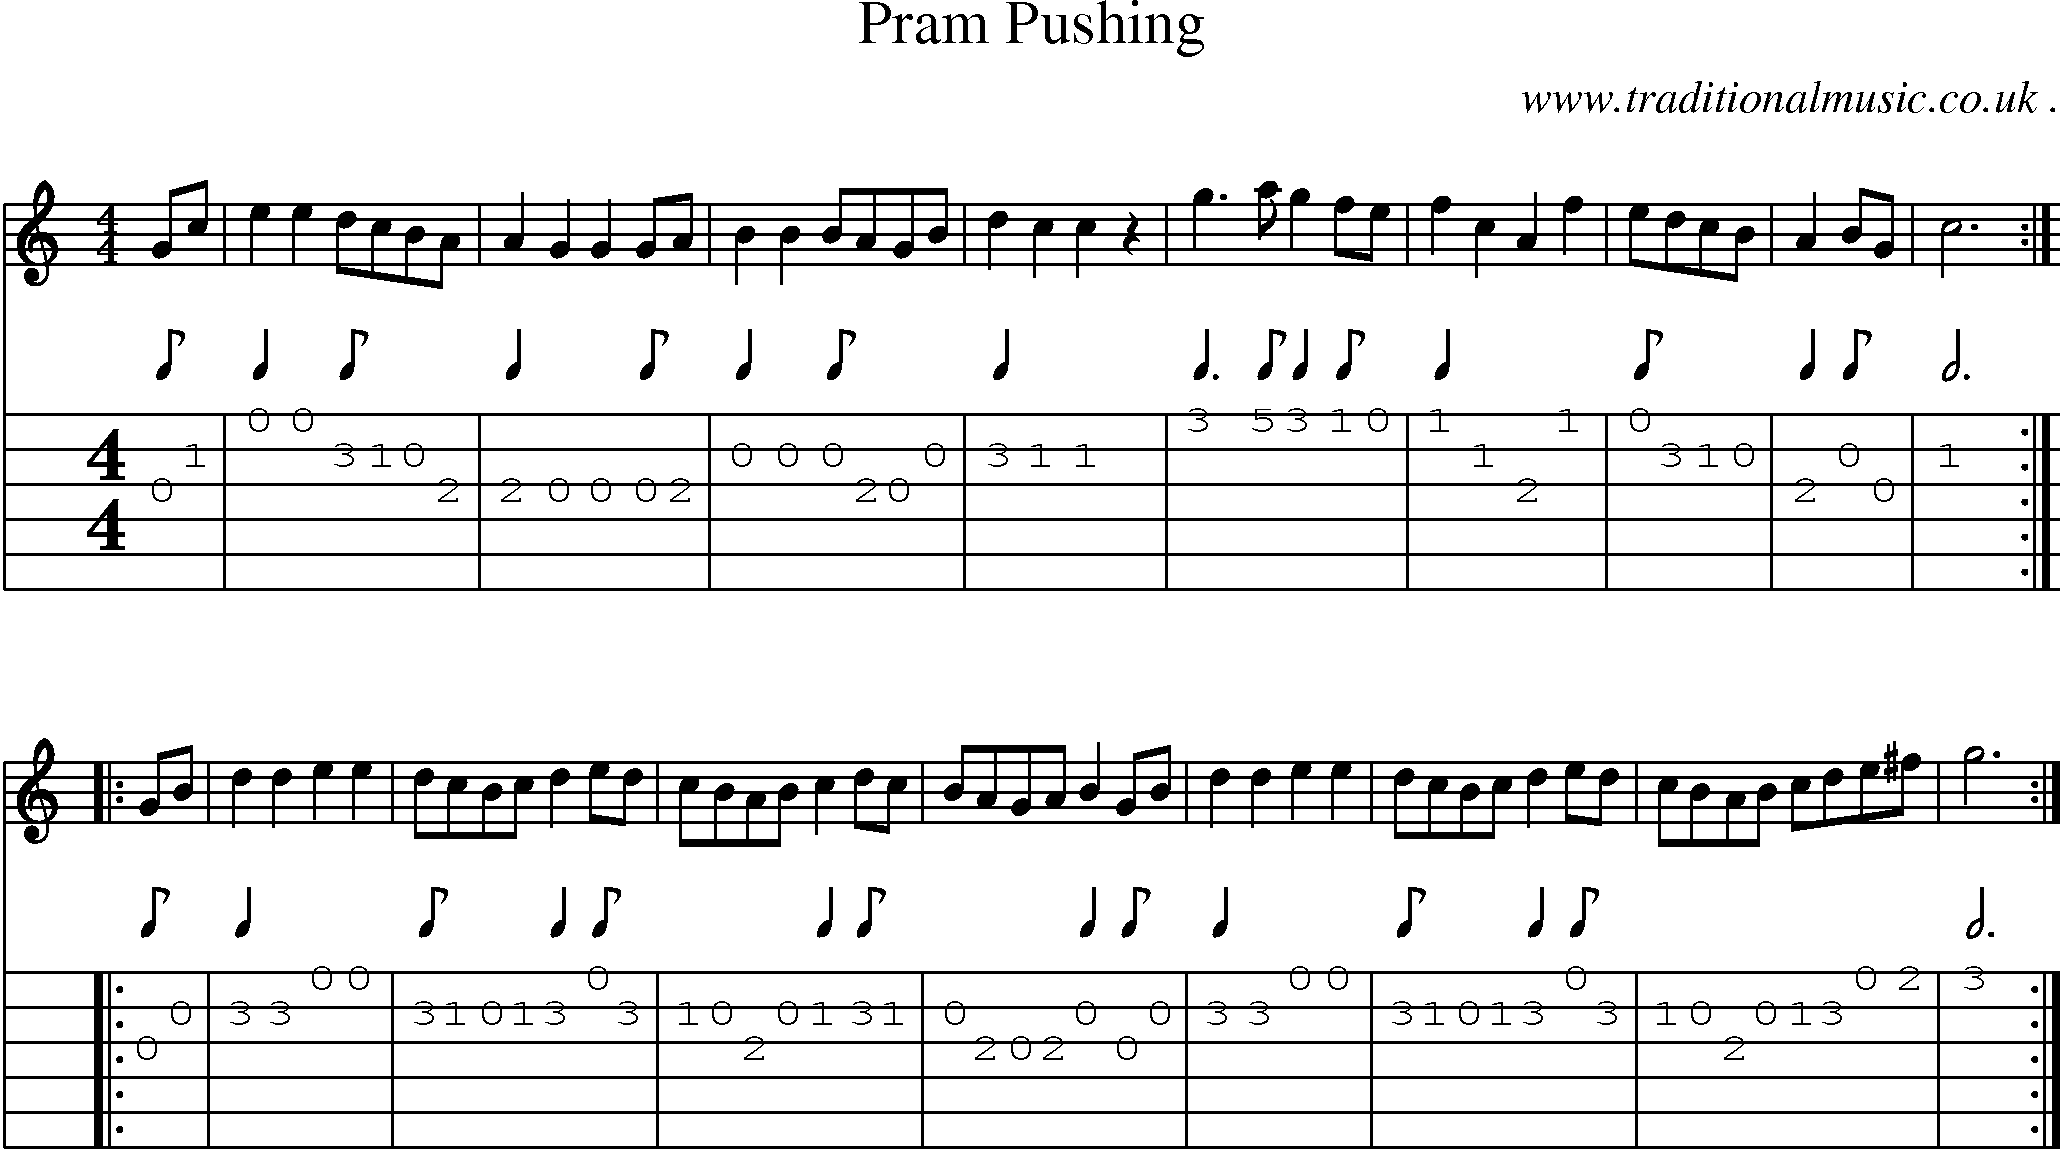 Sheet-Music and Guitar Tabs for Pram Pushing